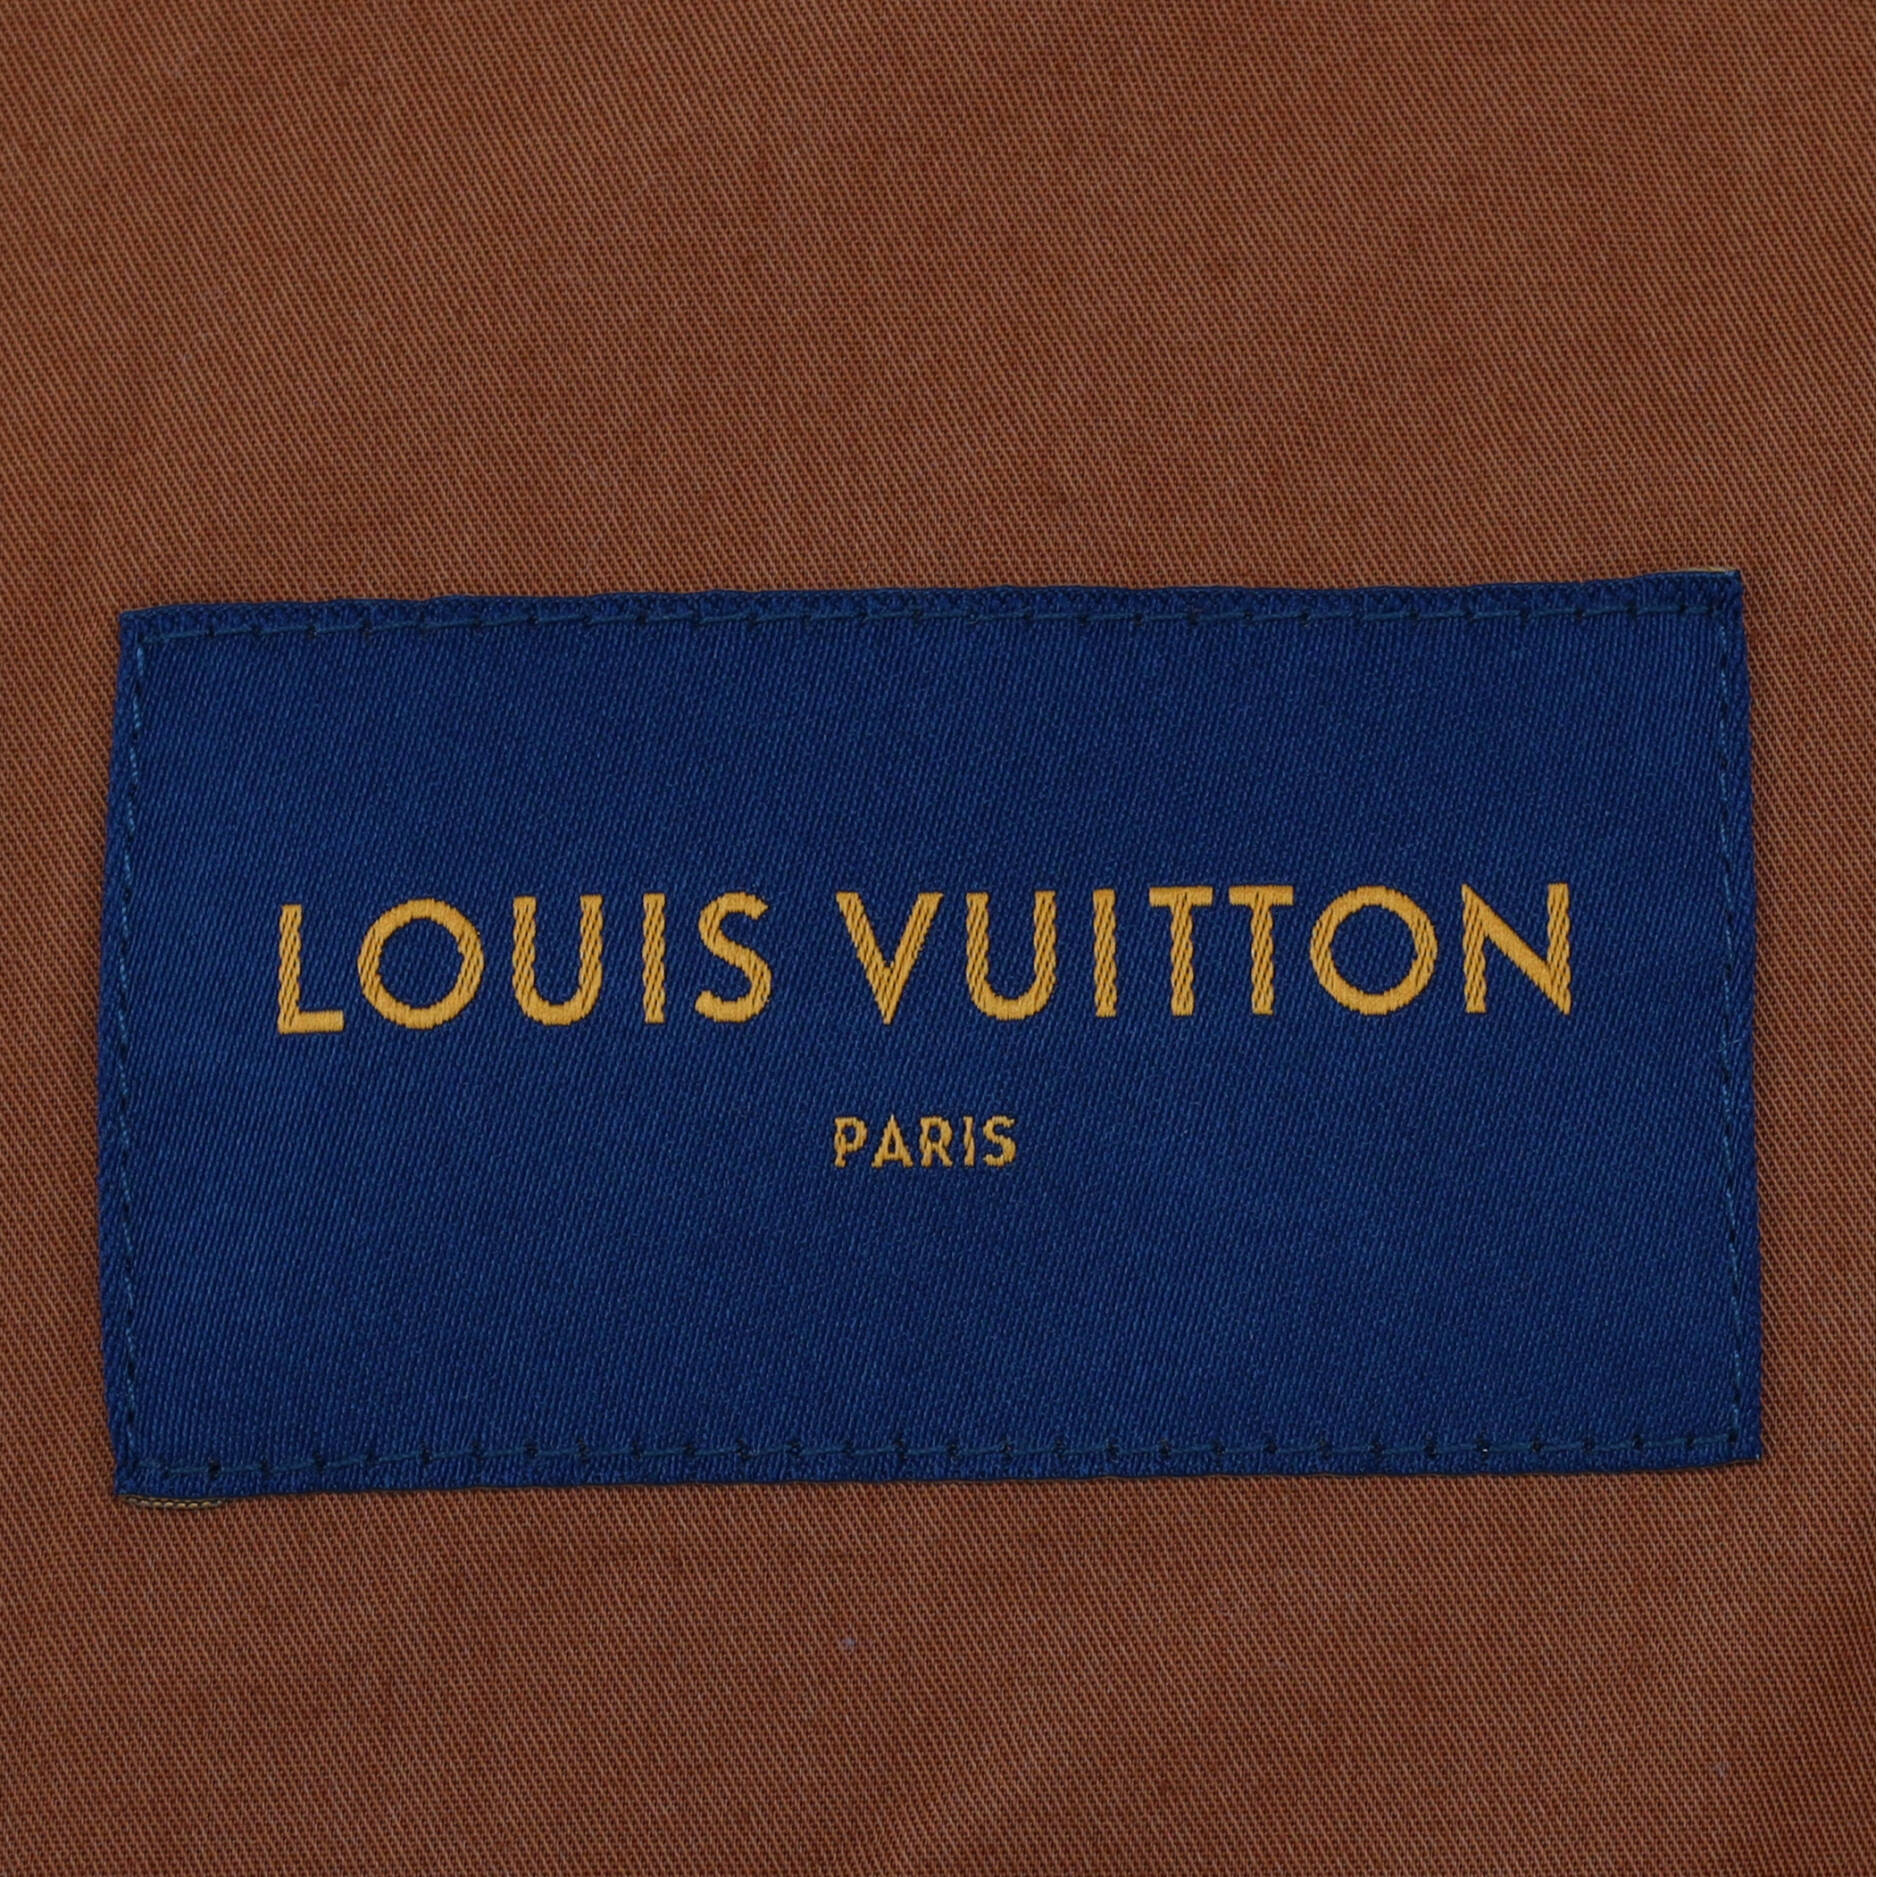 Louis Vuitton, Jackets & Coats, Louis Vuitton X Nba Zipthrough  Hoodiedenim Blue